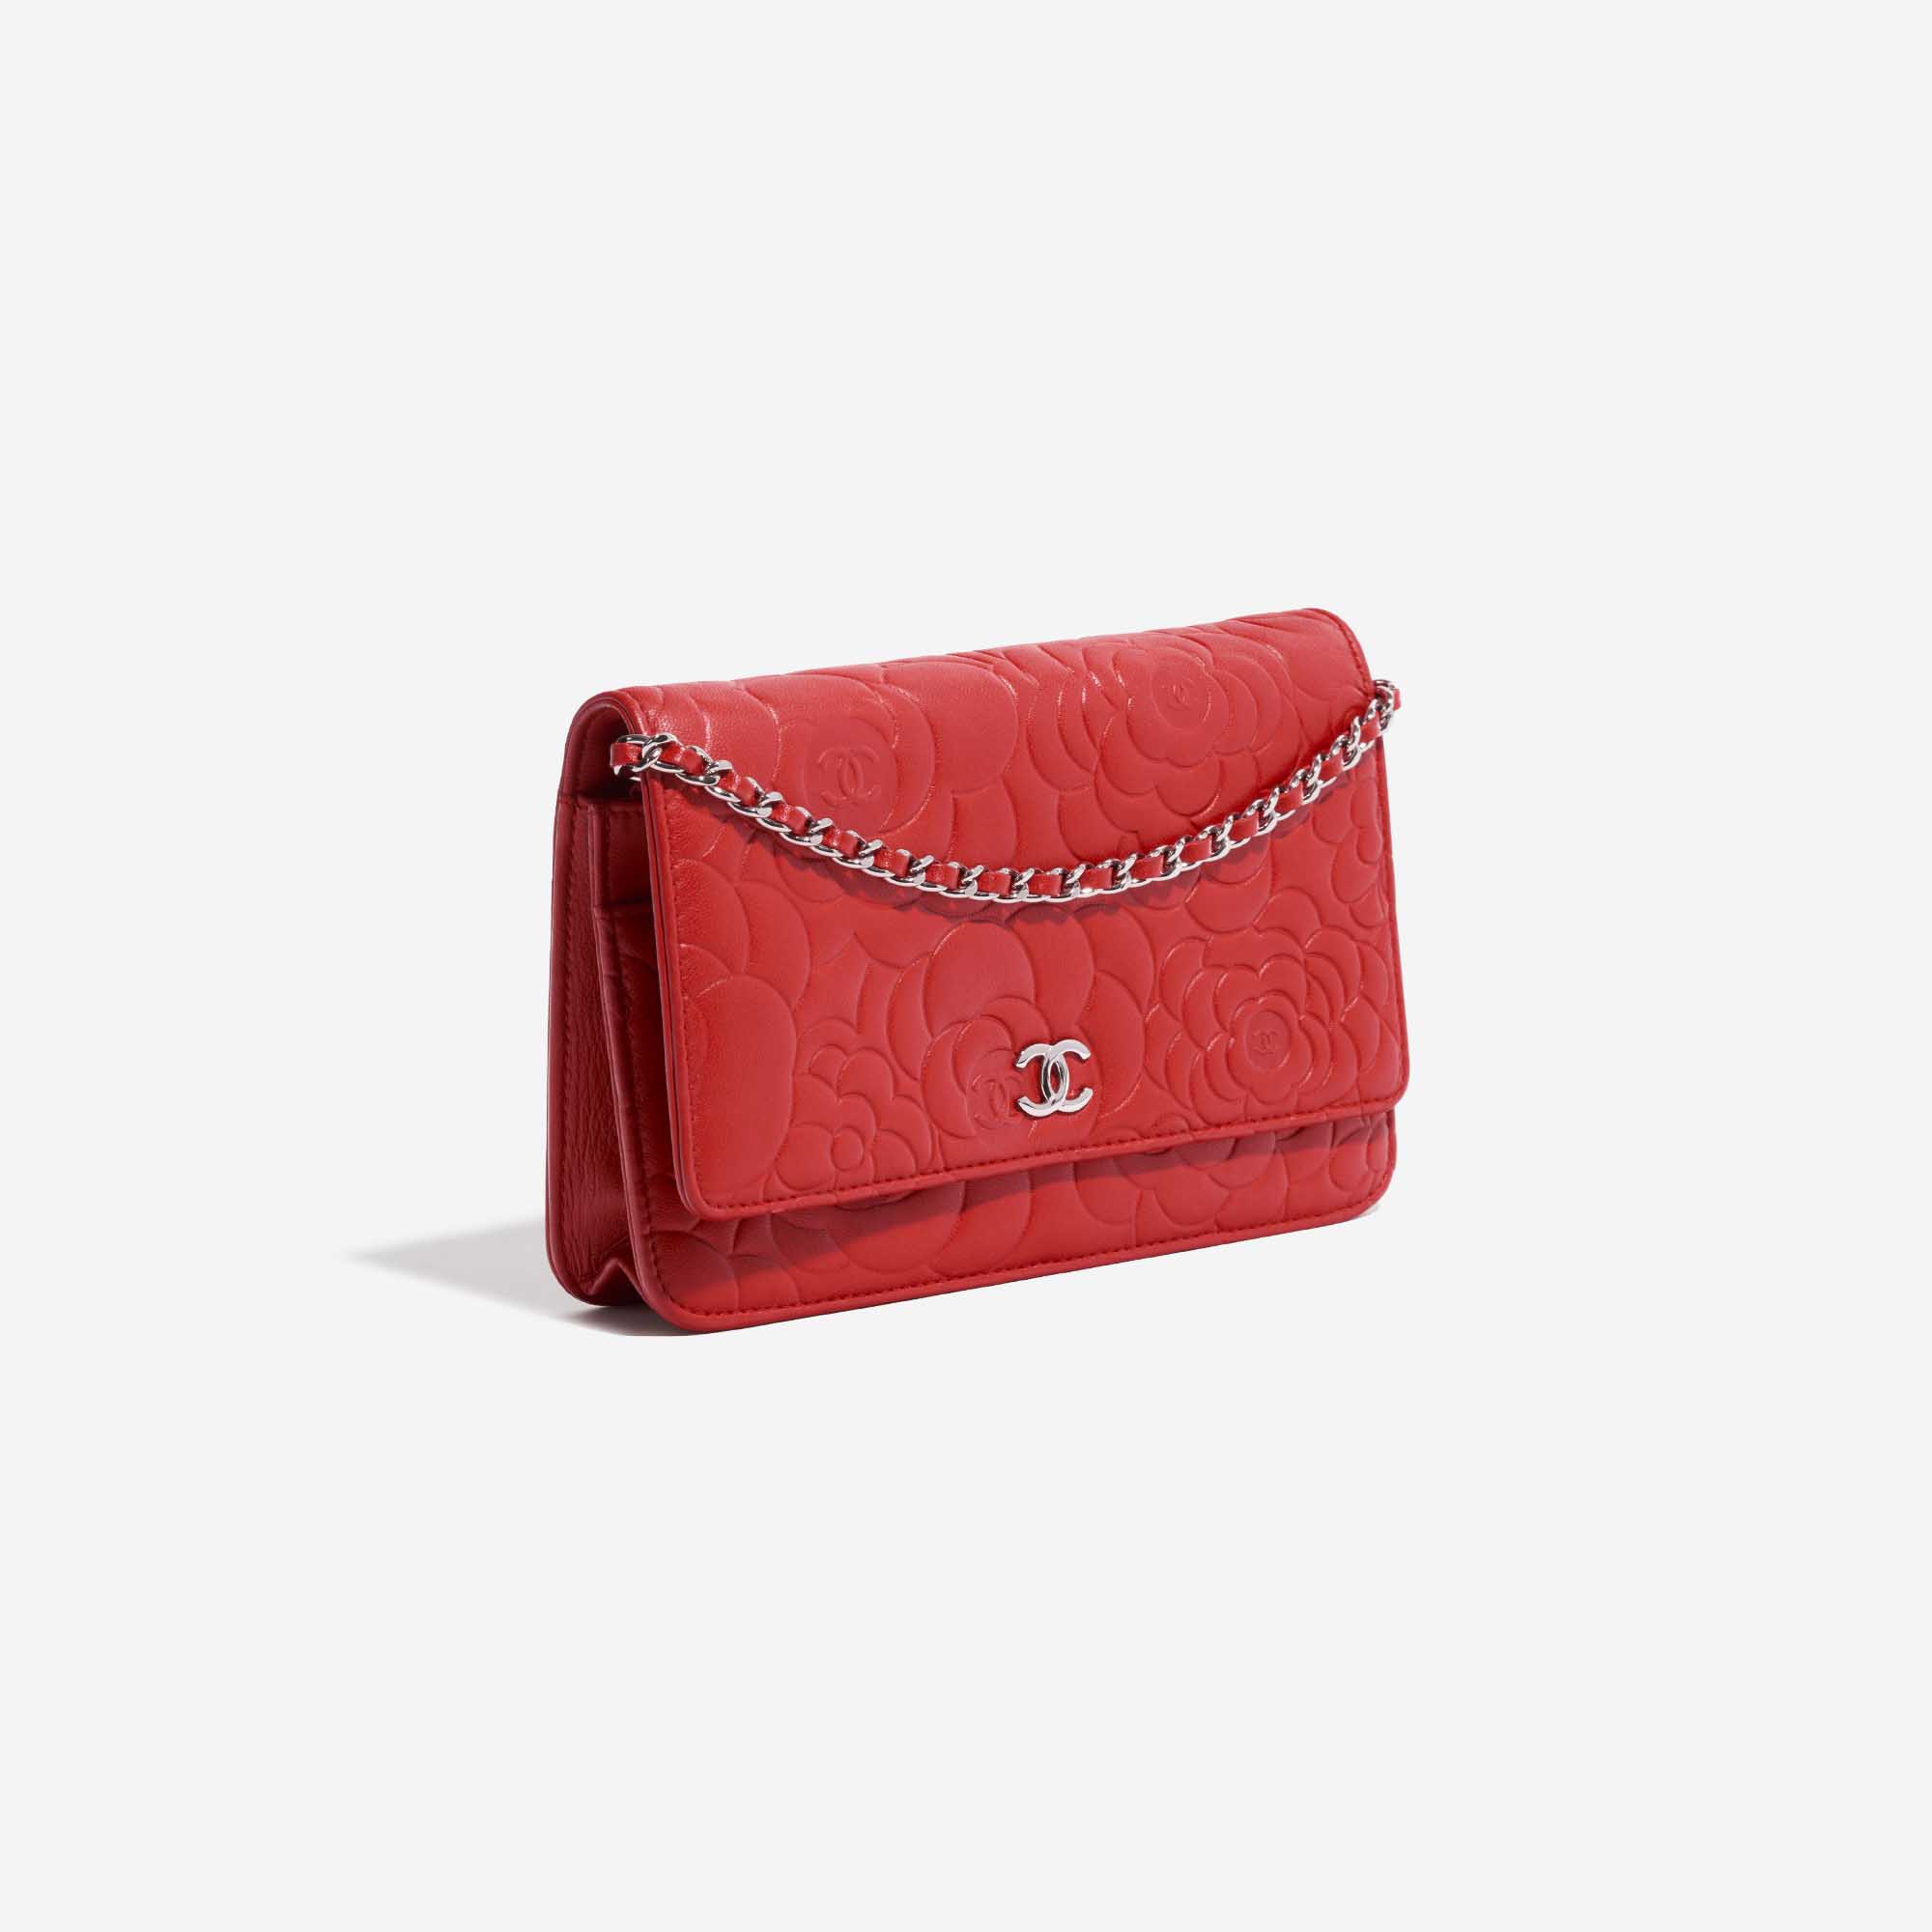 Sac Chanel d'occasion WOC Agneau Camélia Rouge Rouge Côté Face | Vendez votre sac de créateur sur Saclab.com